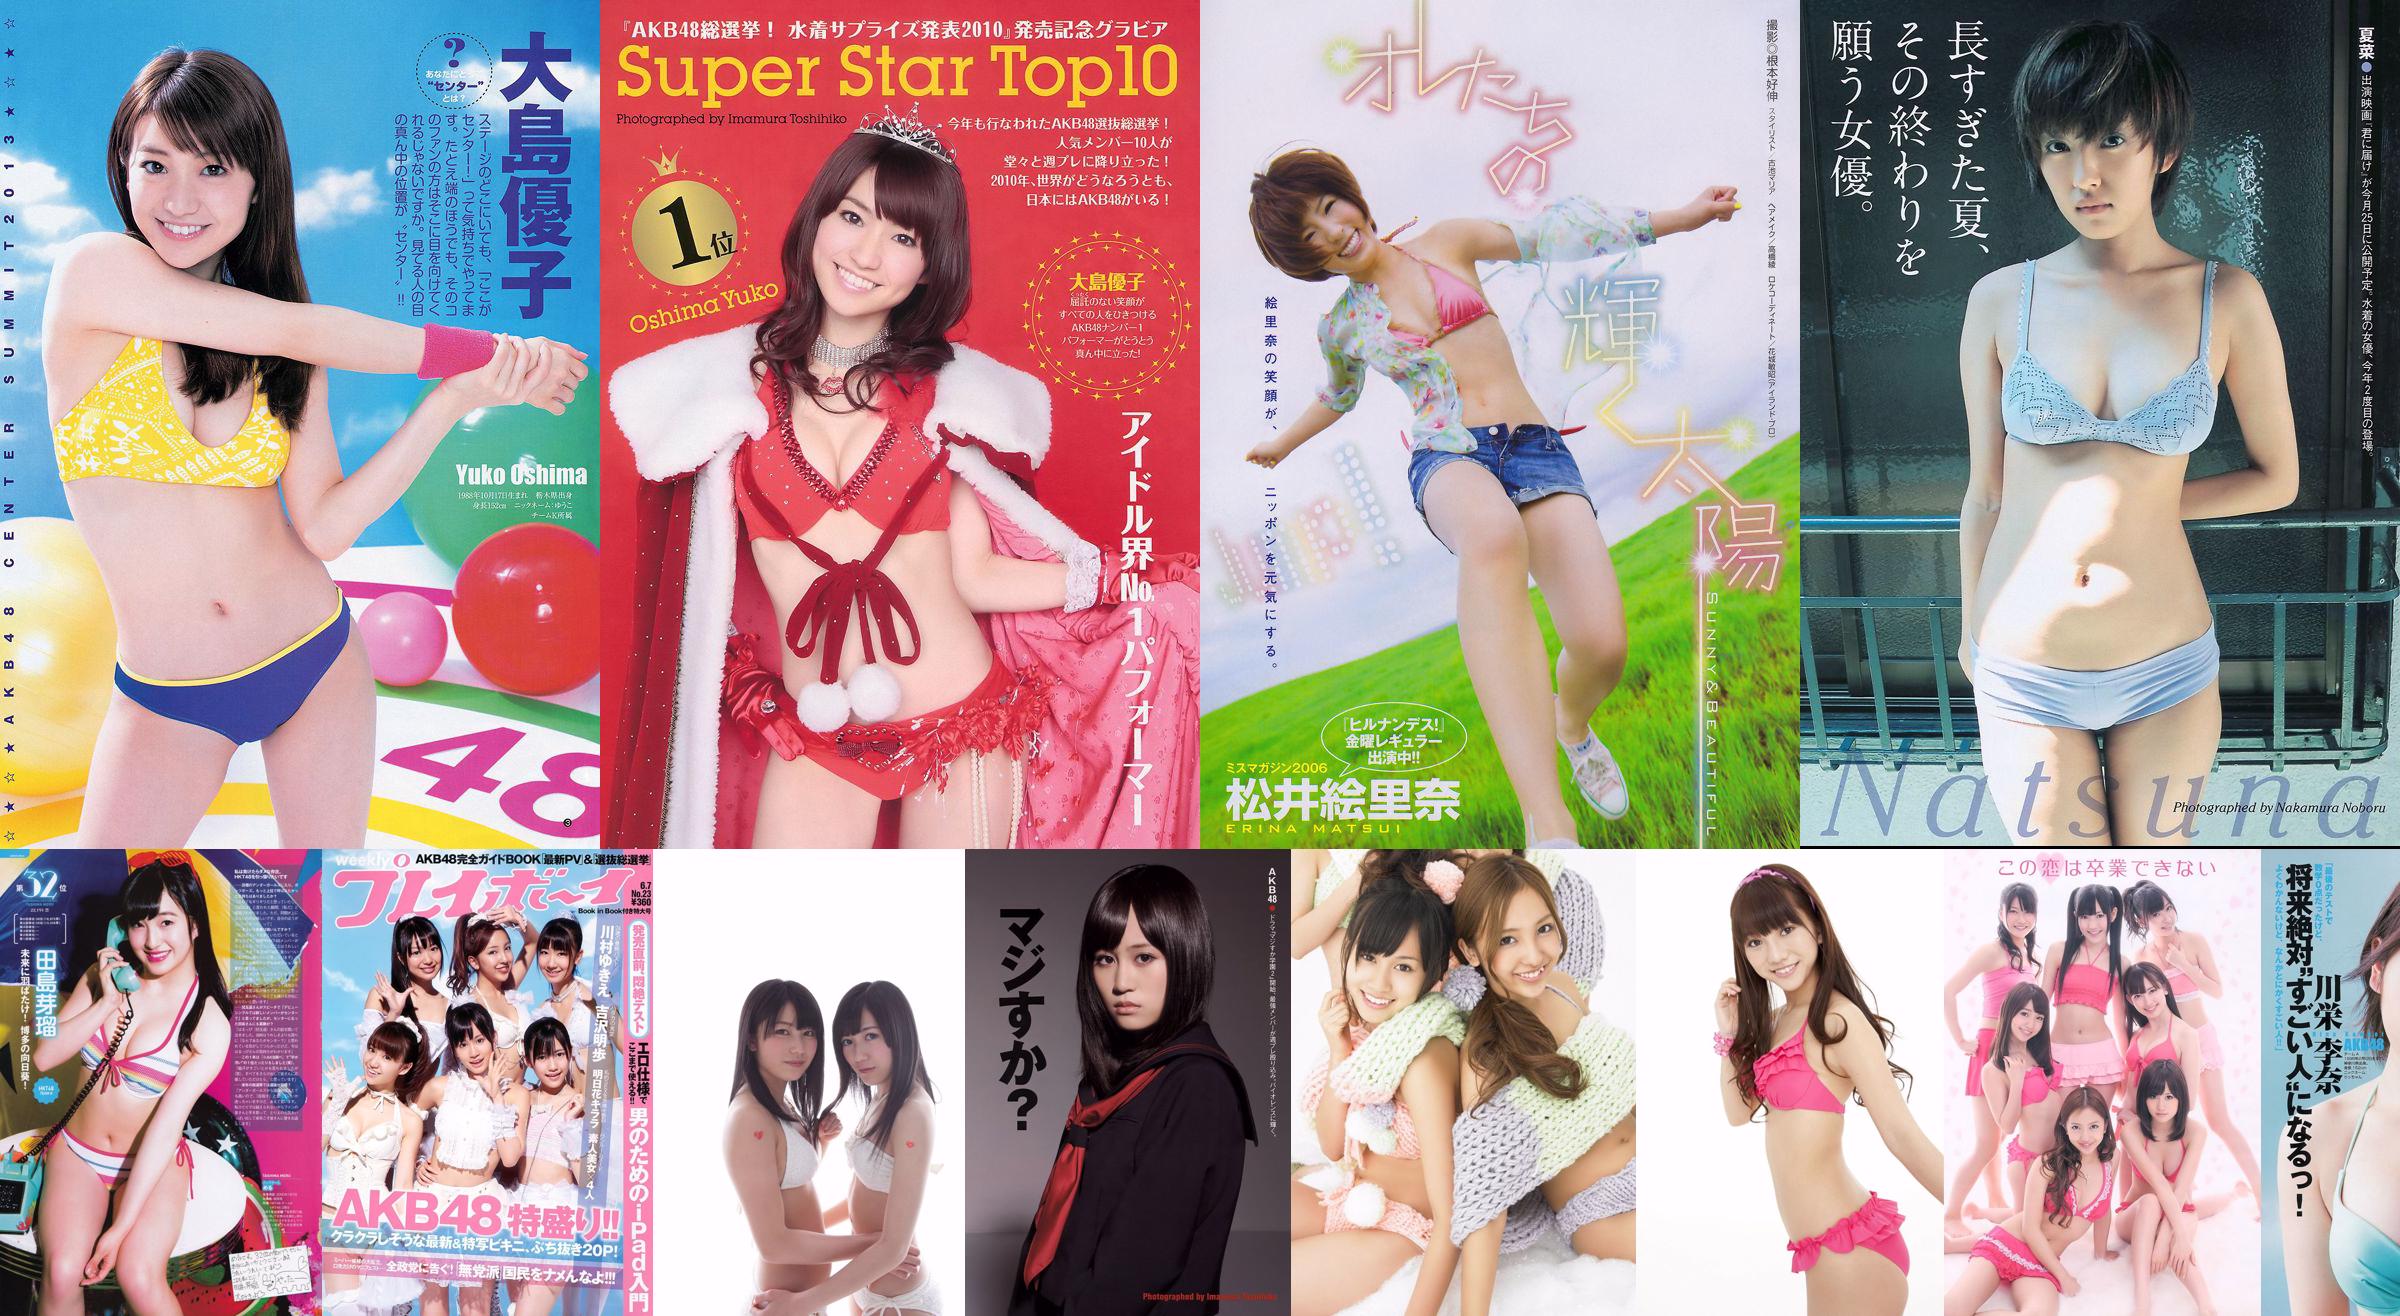 [Revista Bomb] 2012 No.03 AKB48 (Team4) NMB48 Atsuko Maeda Mayu Watanabe SUPER ☆ GiRLS Satomi Ishihara Ayame Goriki Ai Shinozaki Fotografía No.4a2e3a Página 14